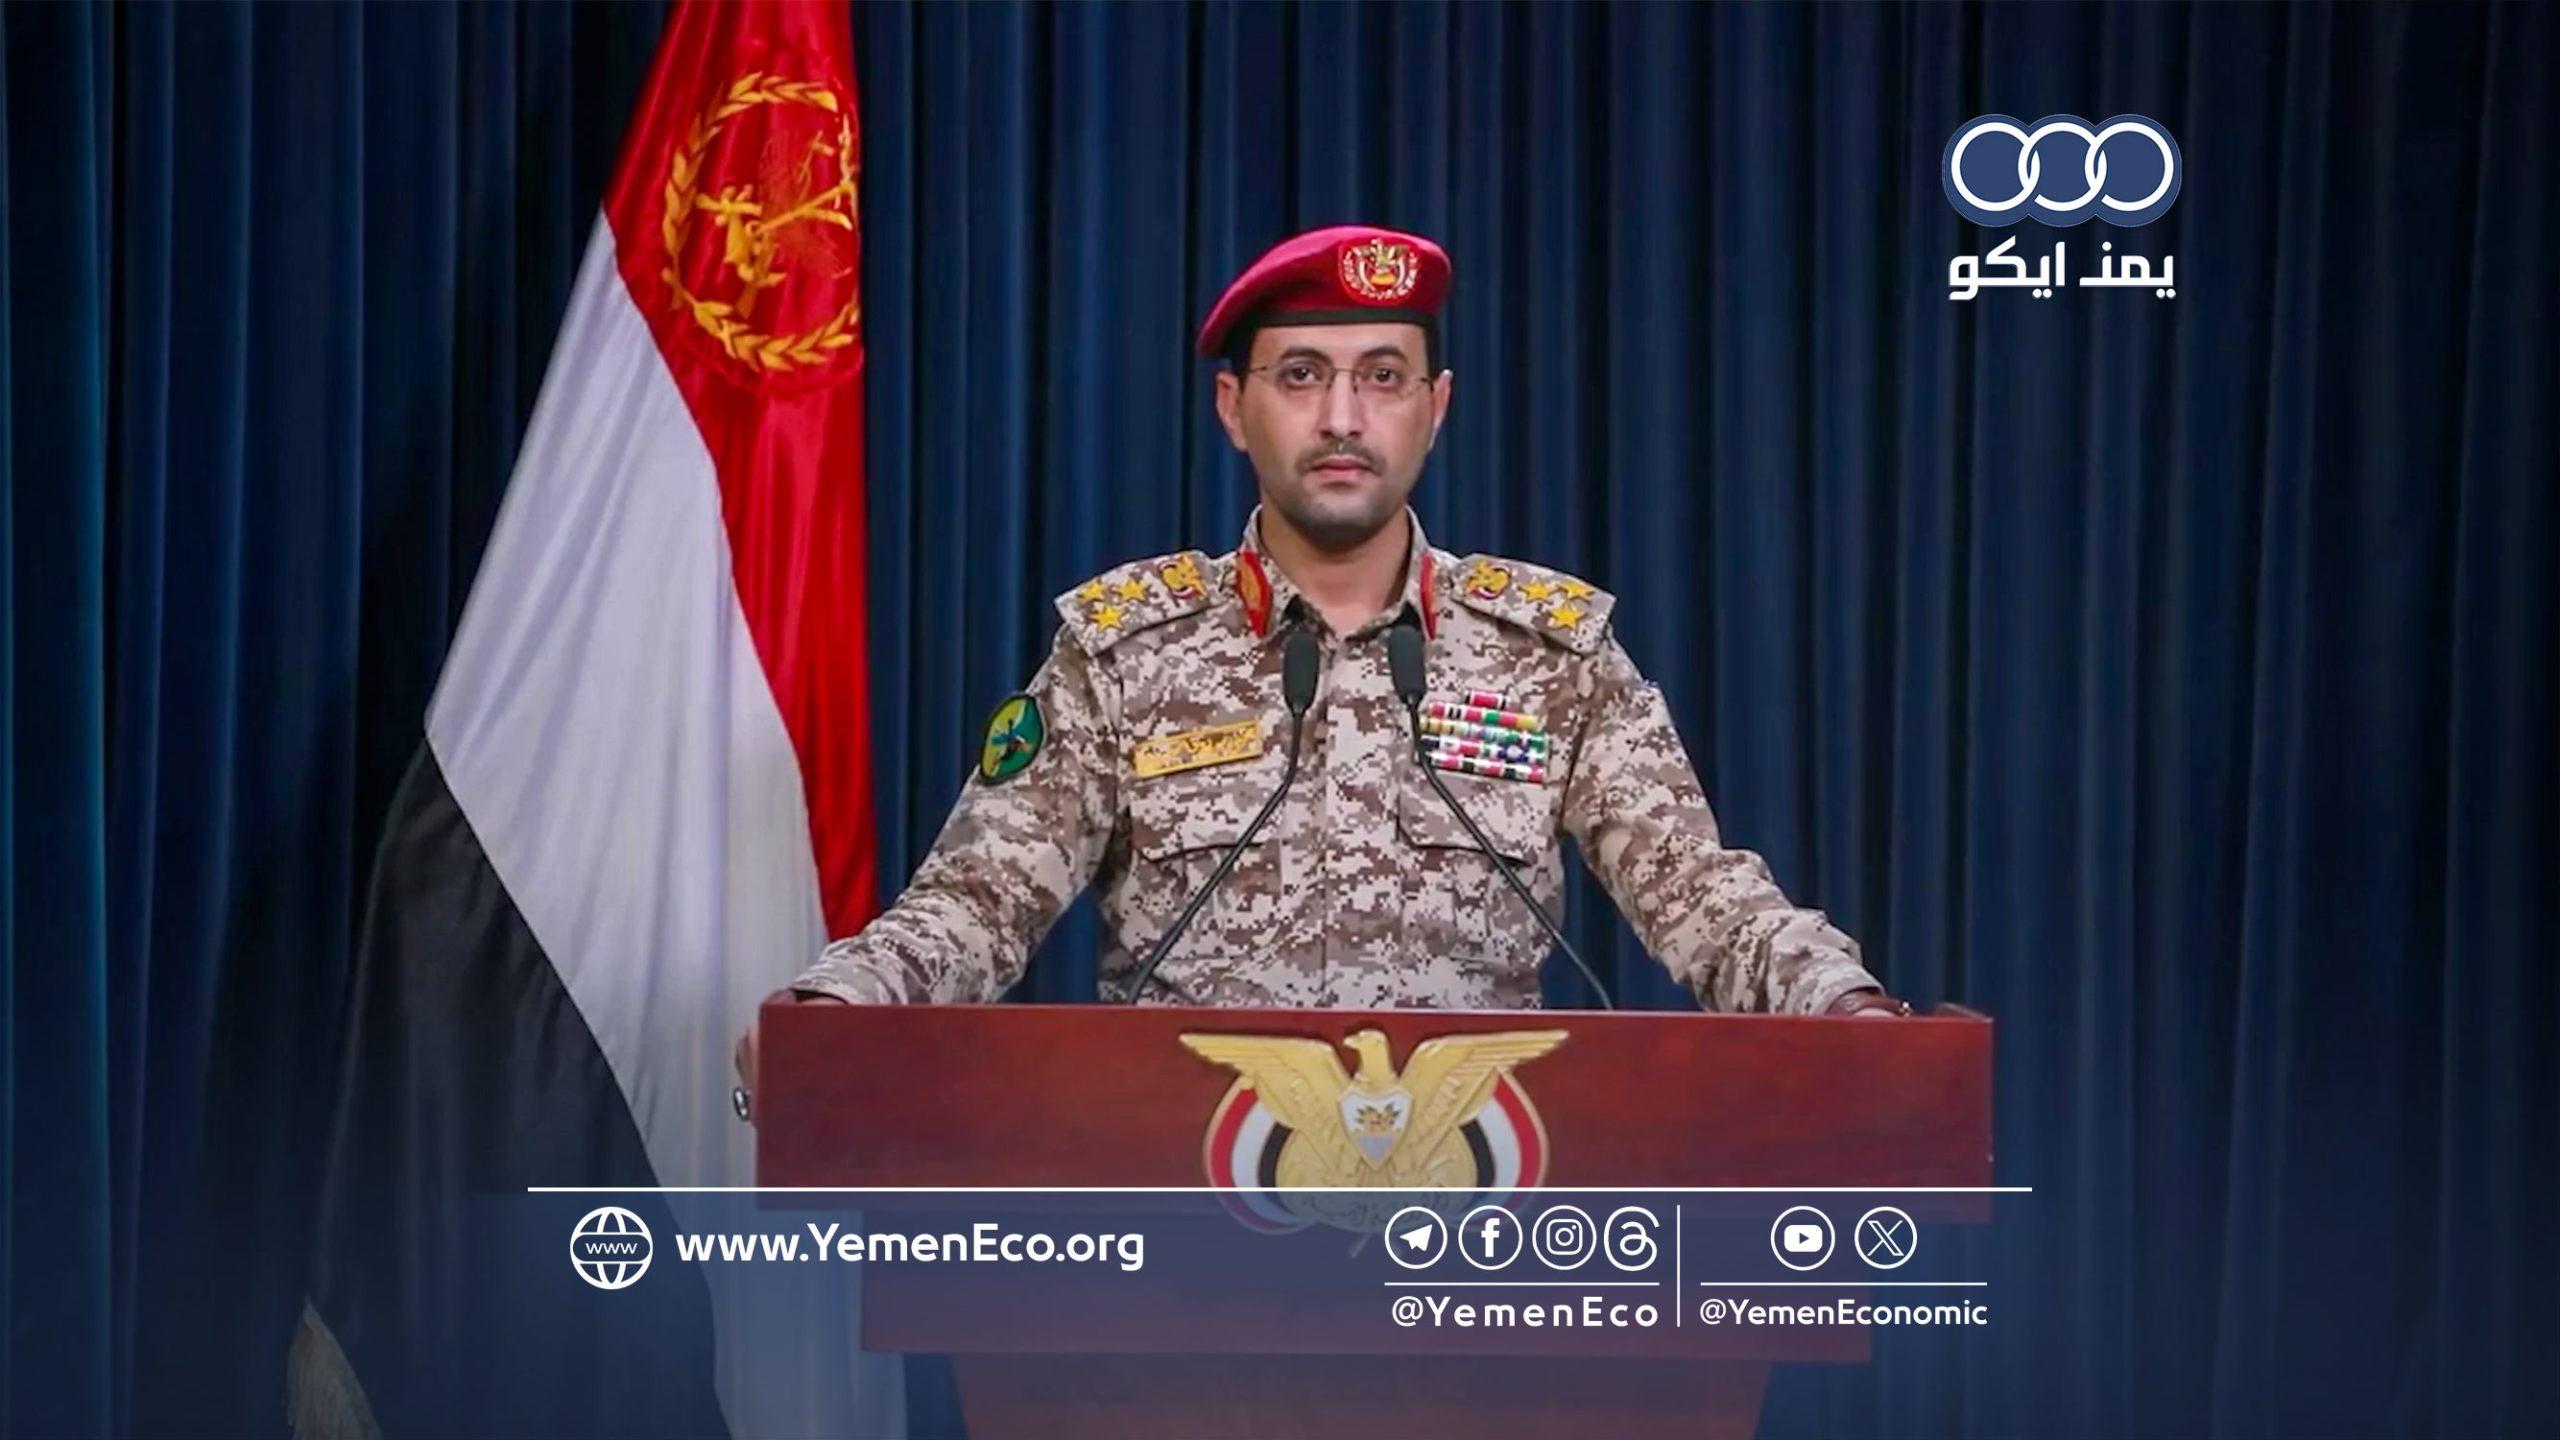 قوات صنعاء تعلن استهداف سفينة بريطانية في خليج عدن وتتوعد بـ”مزيد من الإجراءات”